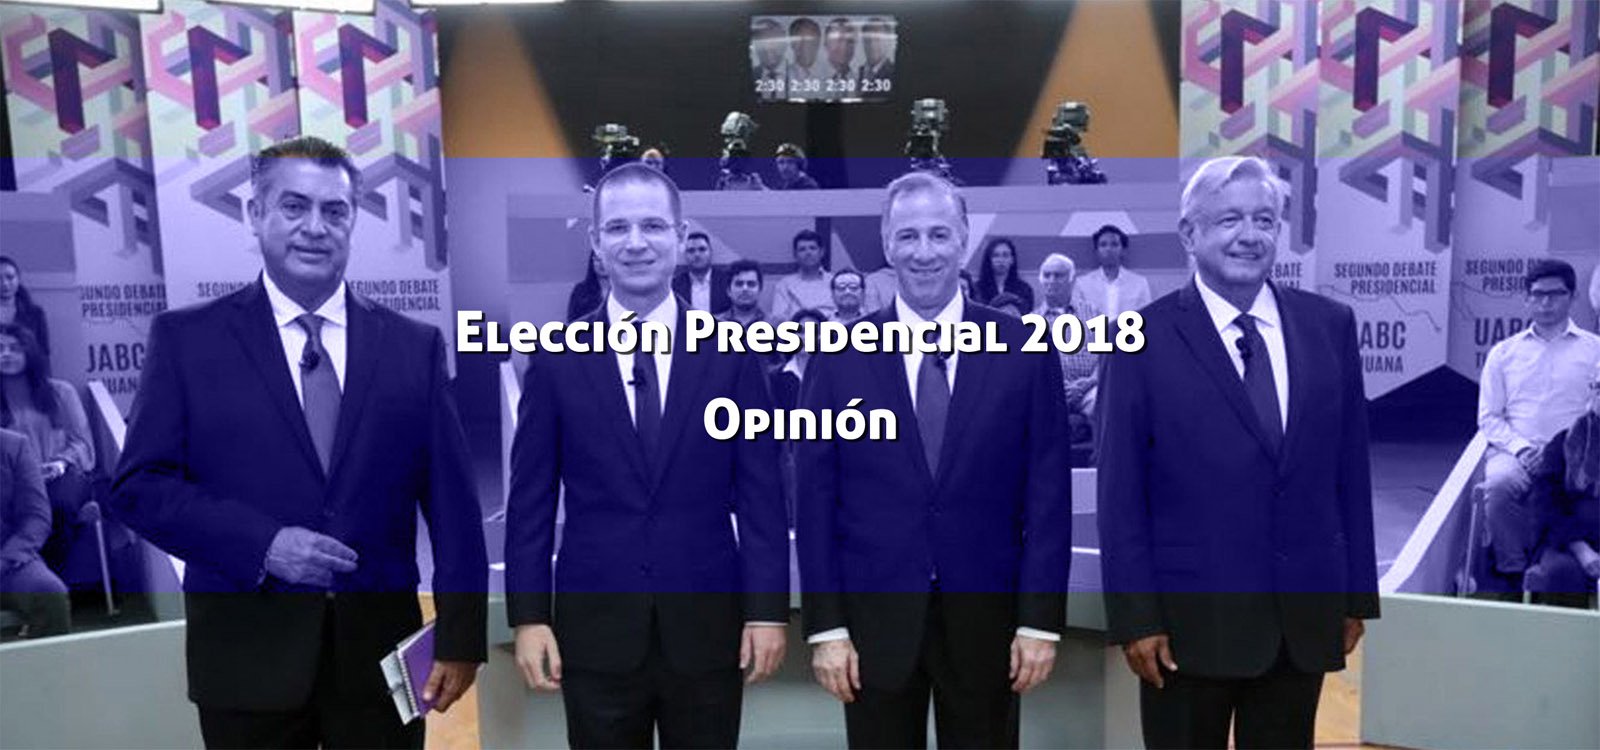 Elección Presidencial 2018: ¿Qué nos espera? Opinión tras el Segundo Debate